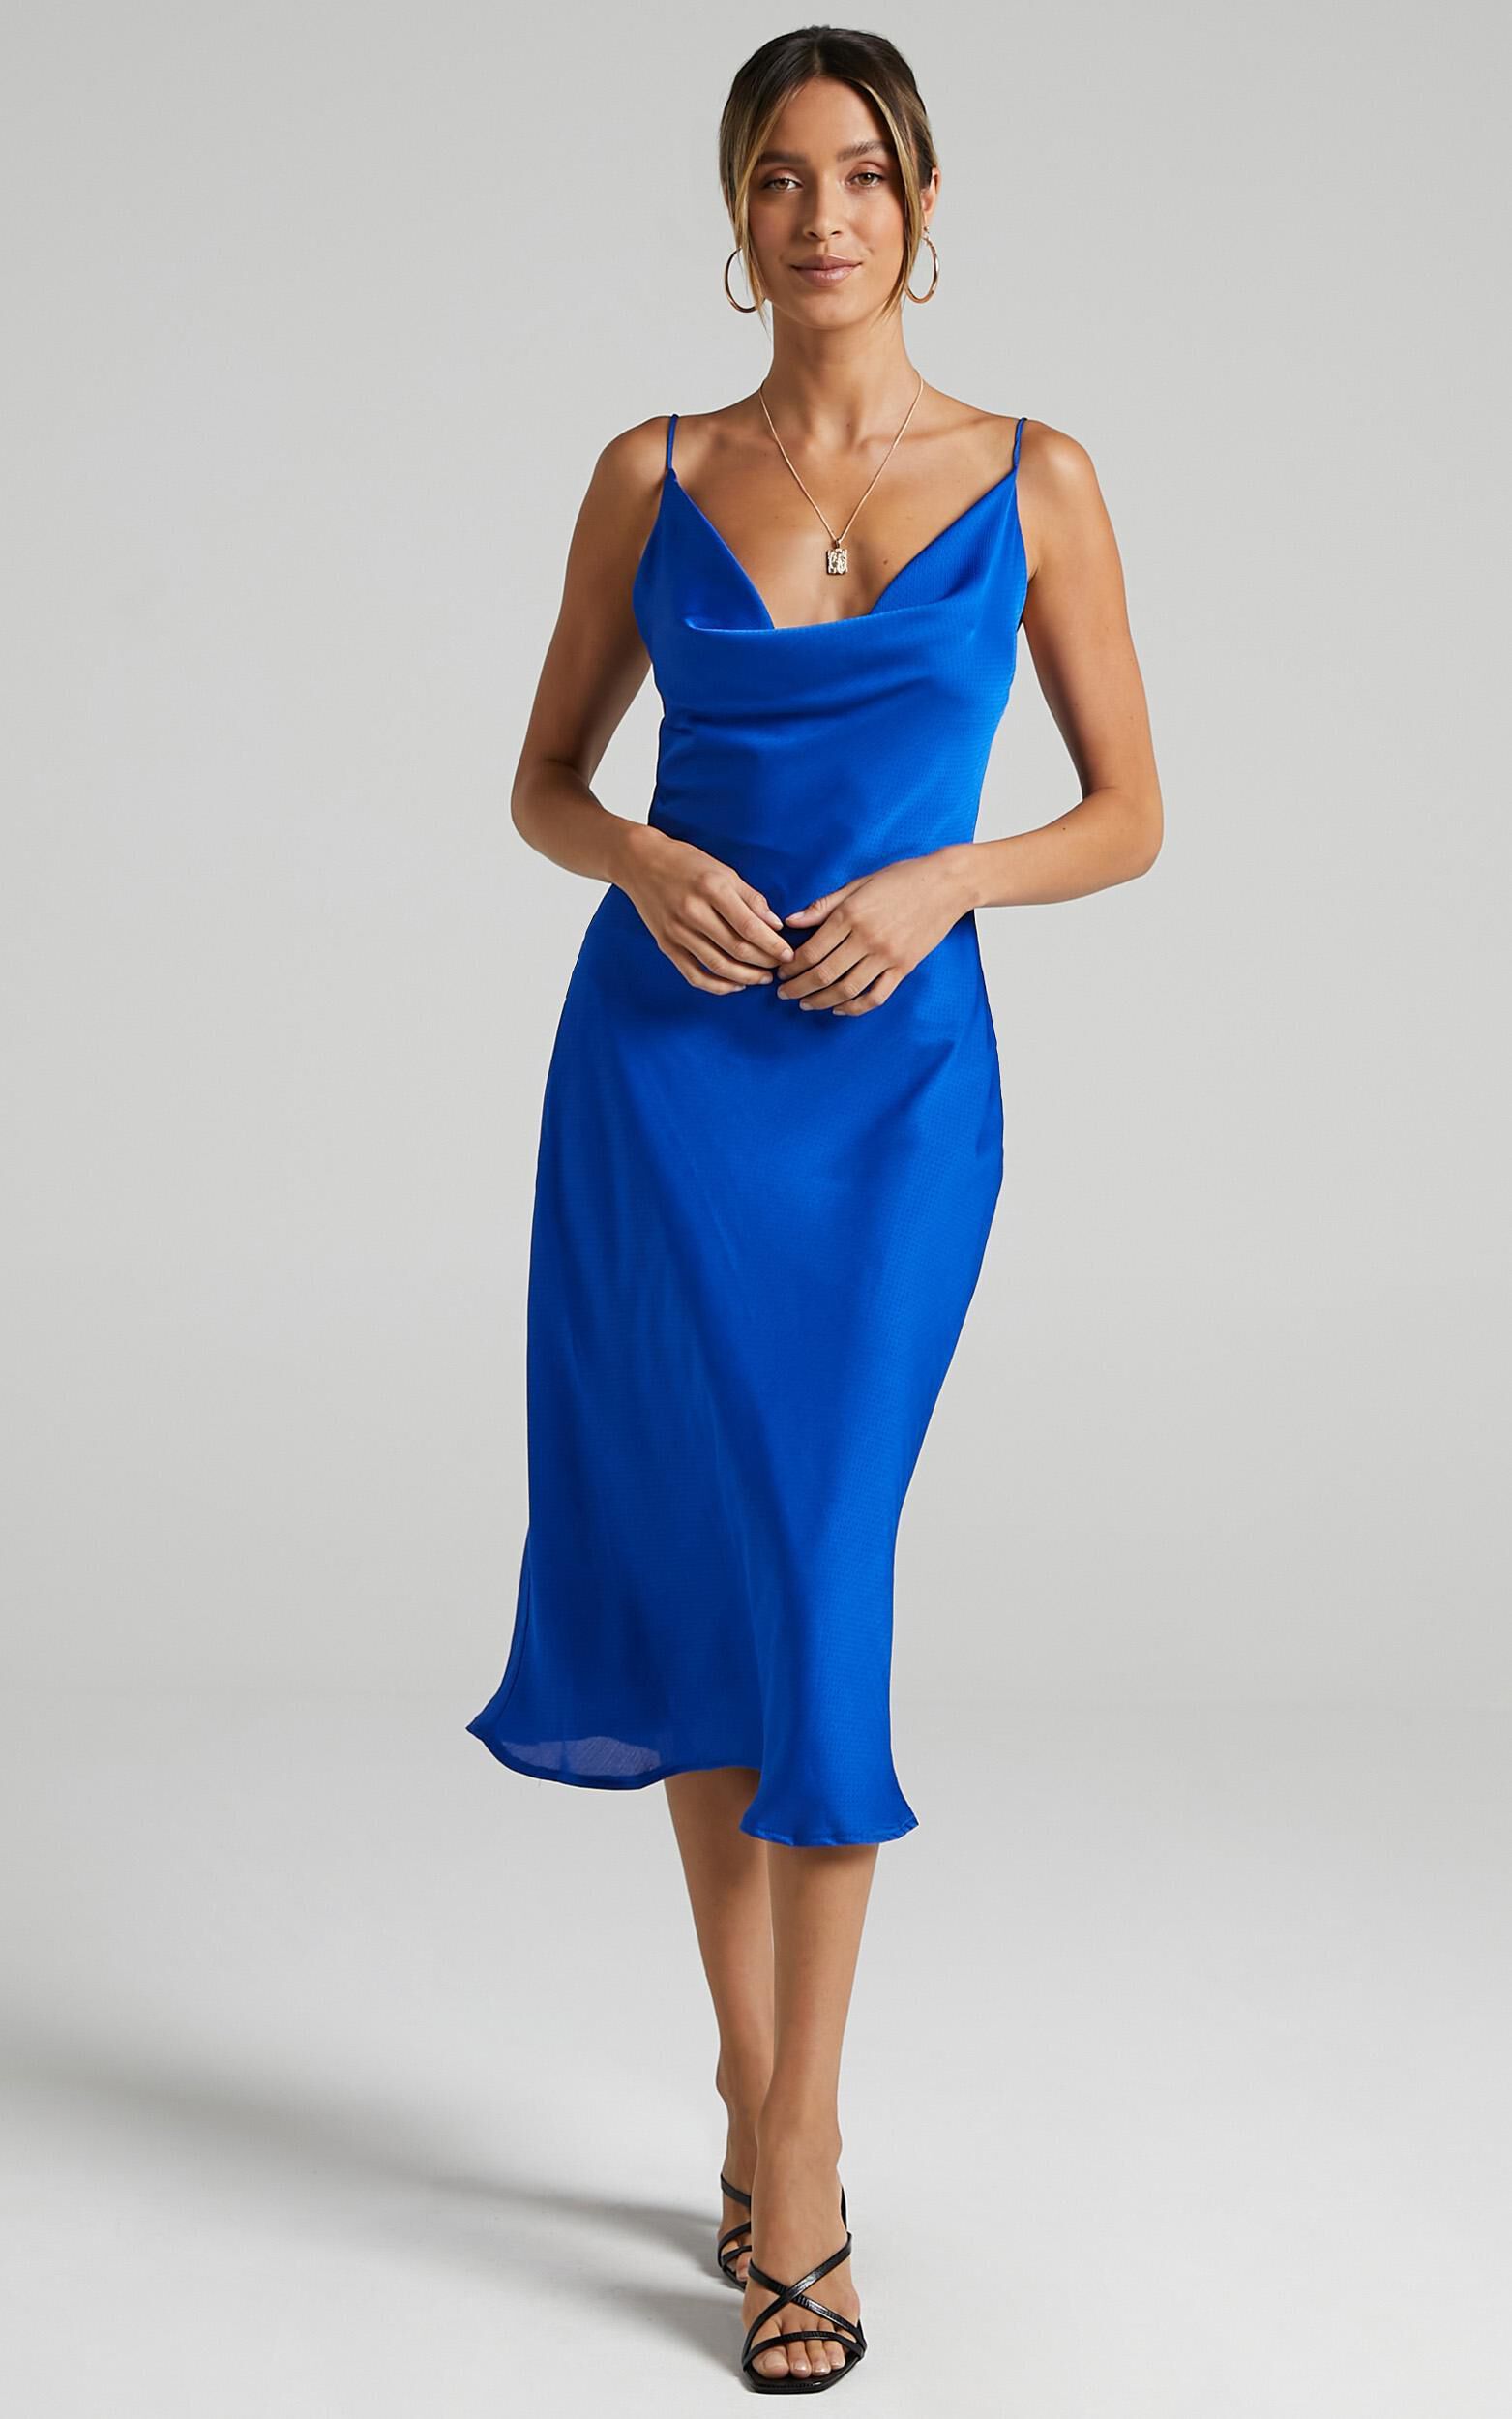 Malmuira Dress in Cobalt Satin | Showpo USA